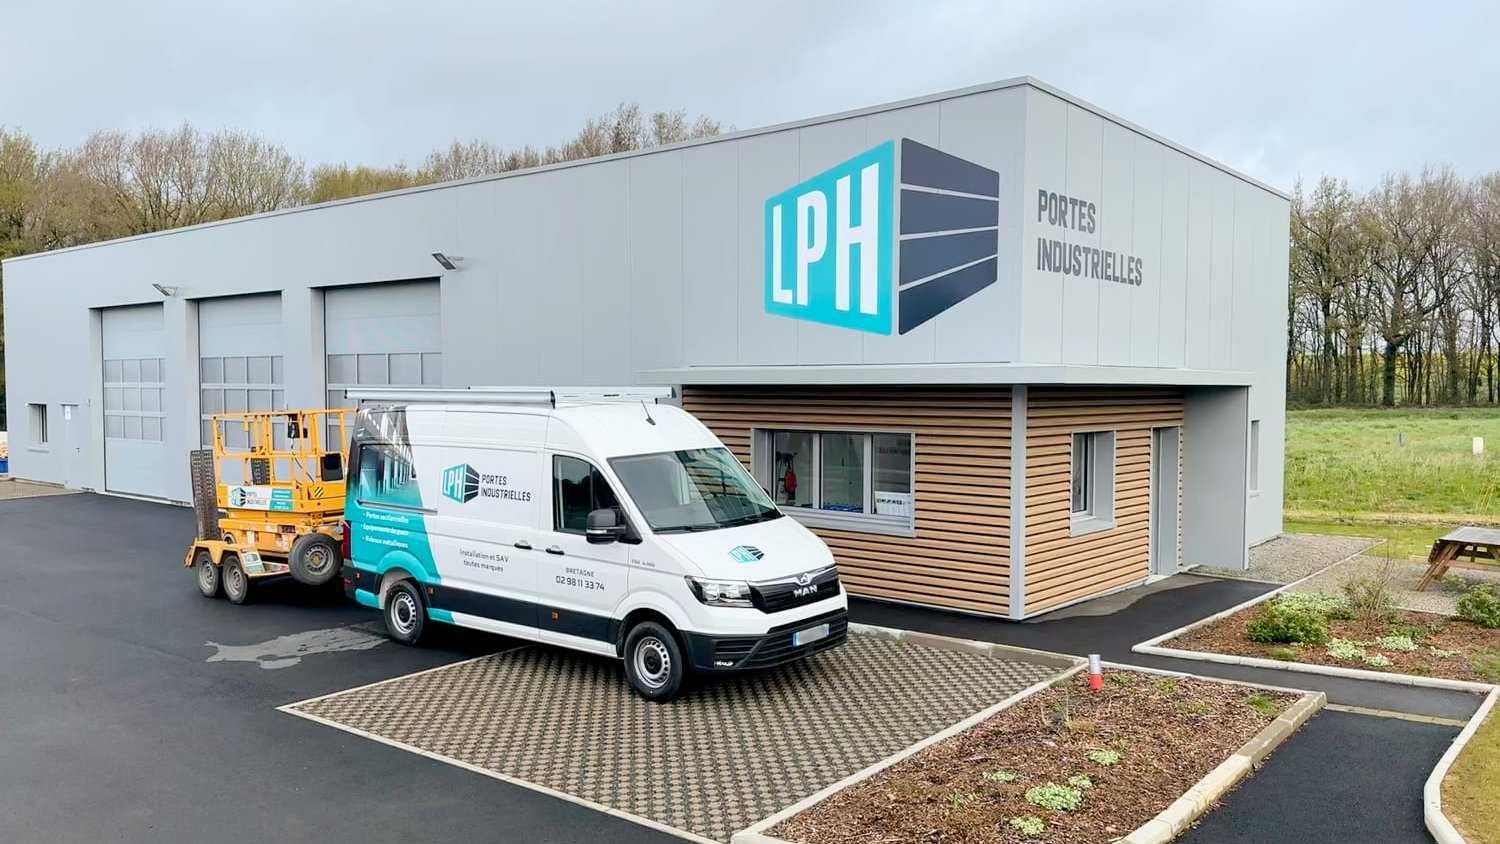 LPH Portes Industrielles / Site de Rennes